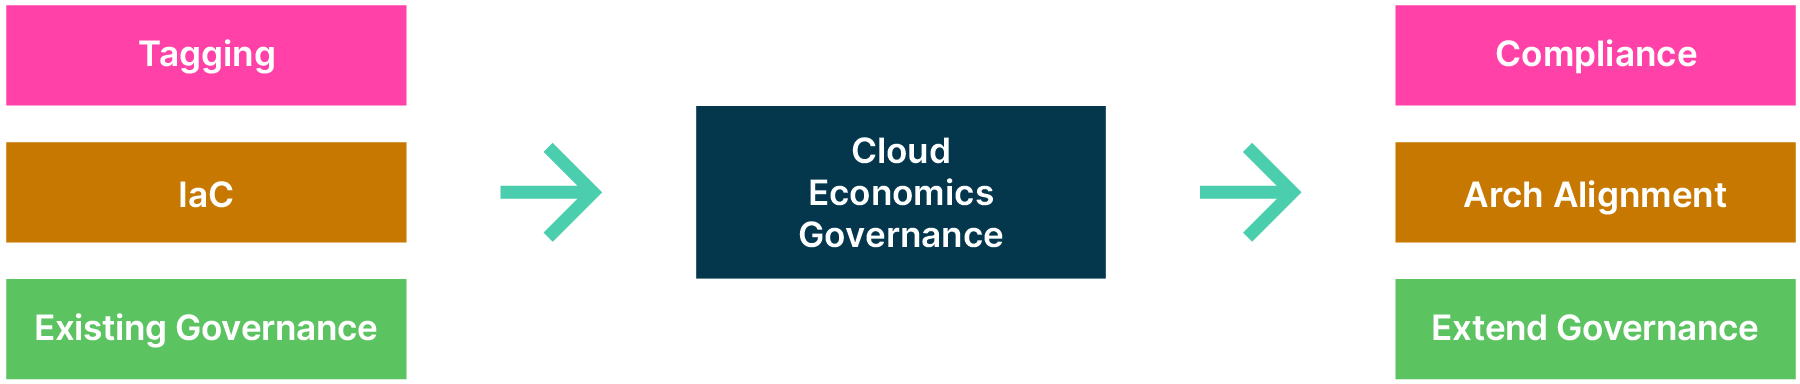 Governance Dependencies in Cloud Economics